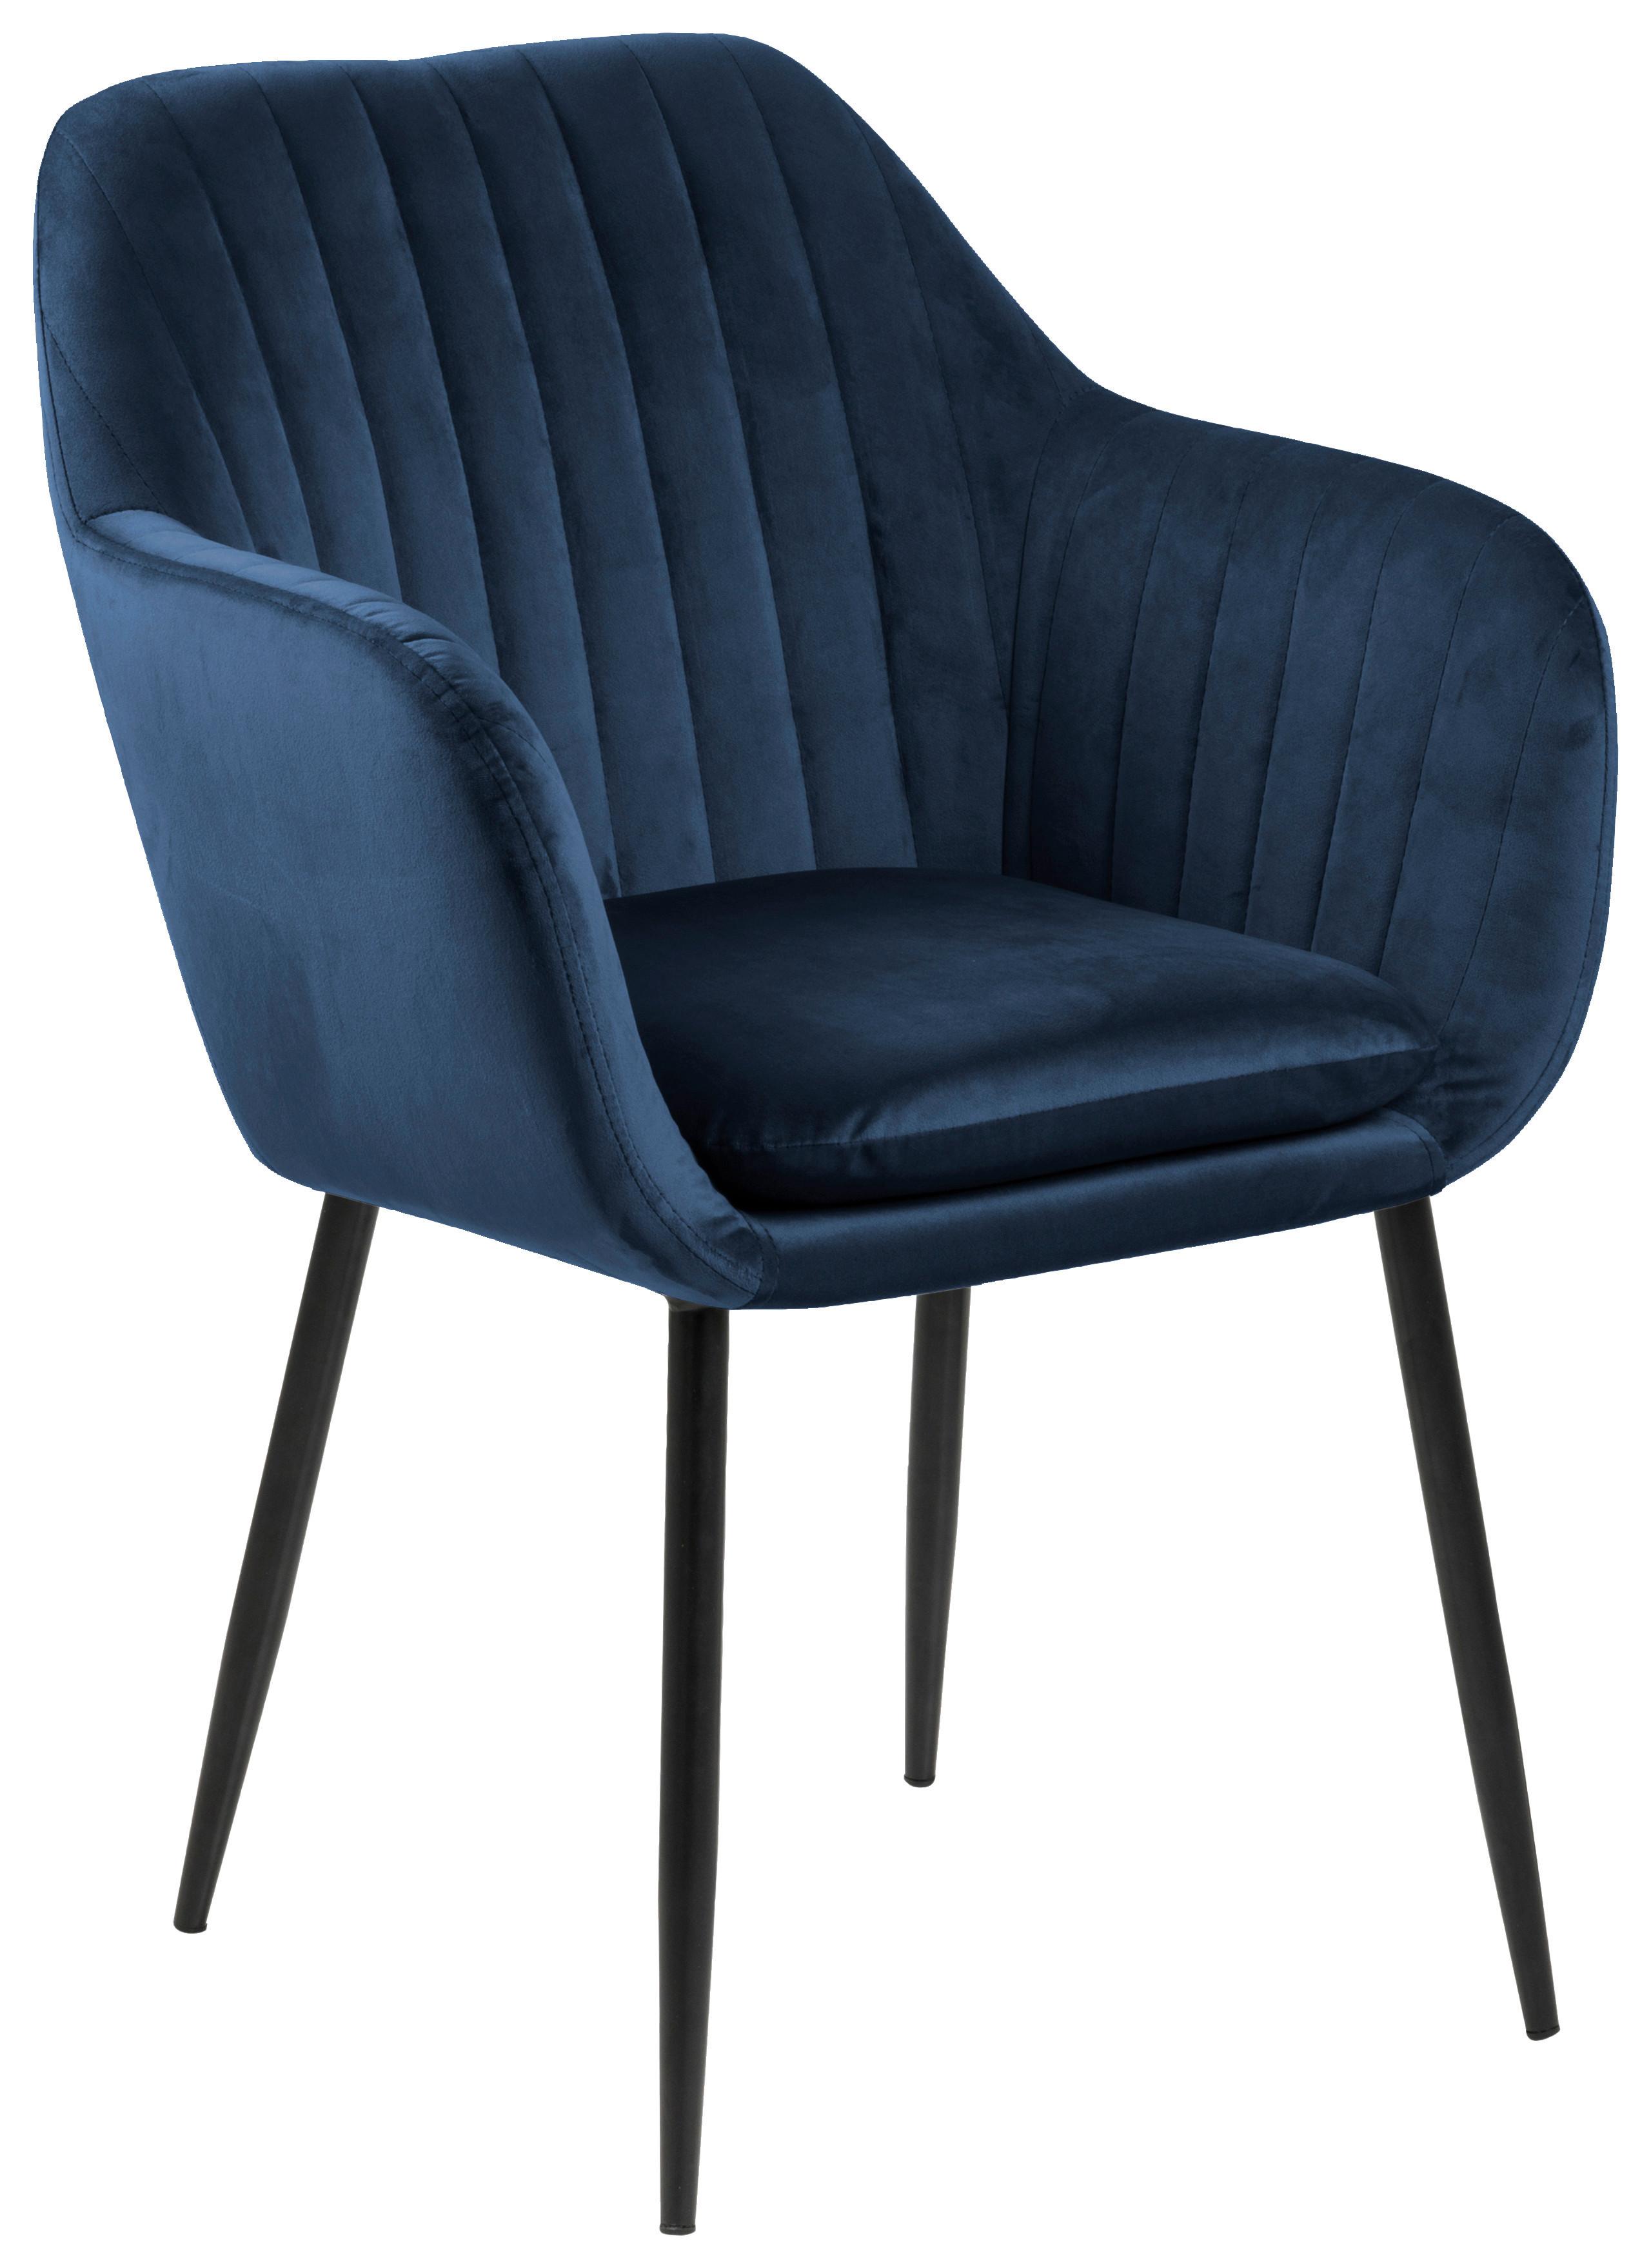 Židle S Područkami Emilia Tmavě Modrá - černá/tmavě modrá, Trend, kov/textil (57/83/59cm) - Ambia Home